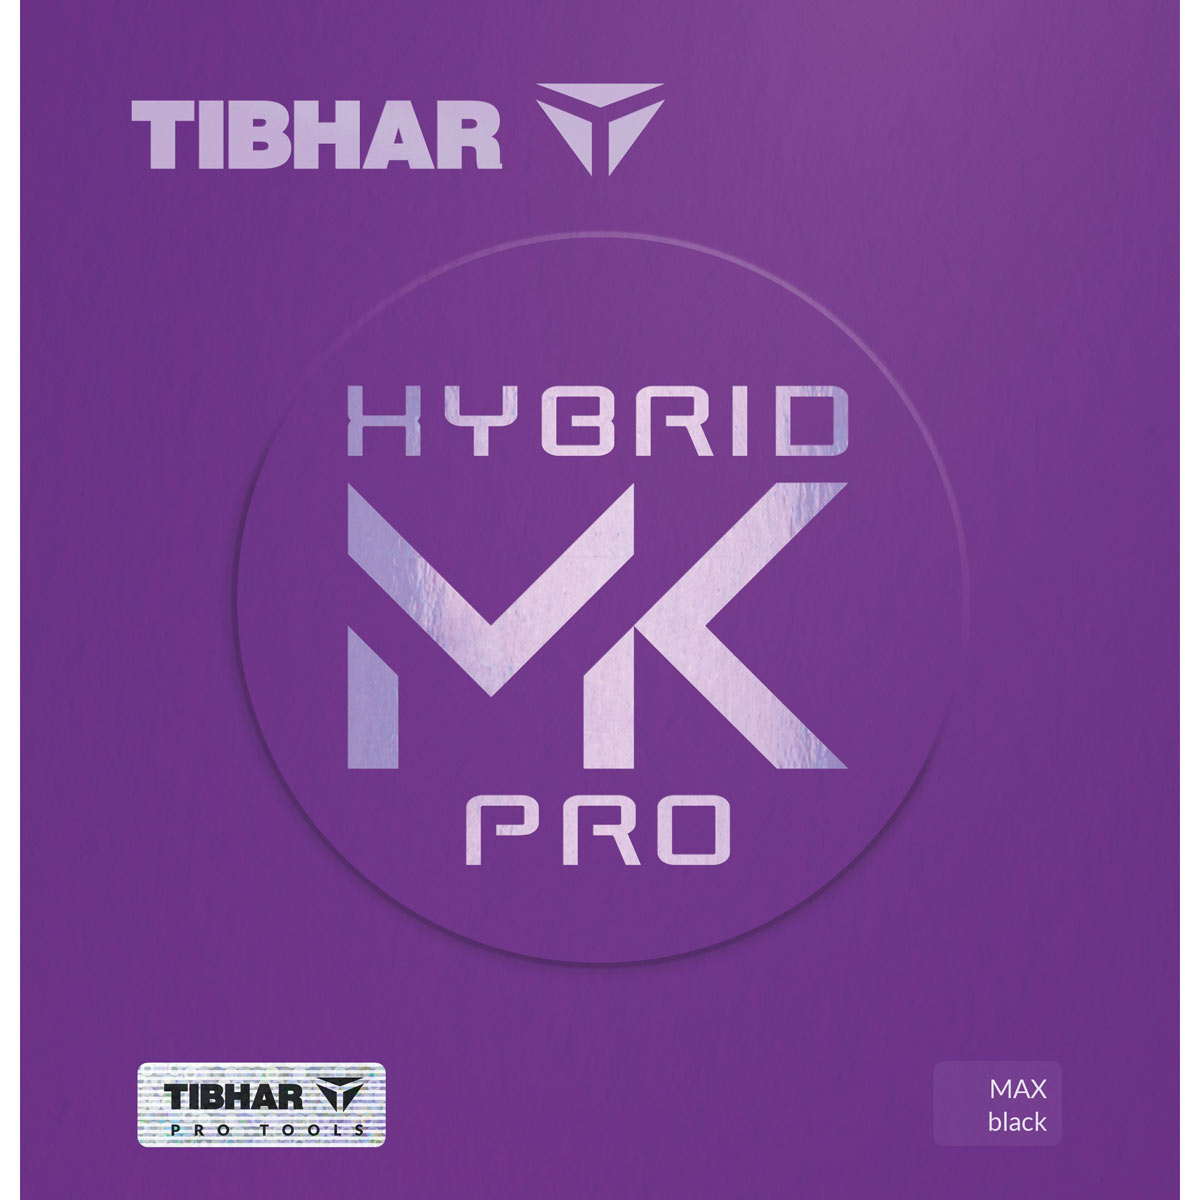 TIBHAR Belag Hybrid MK Pro